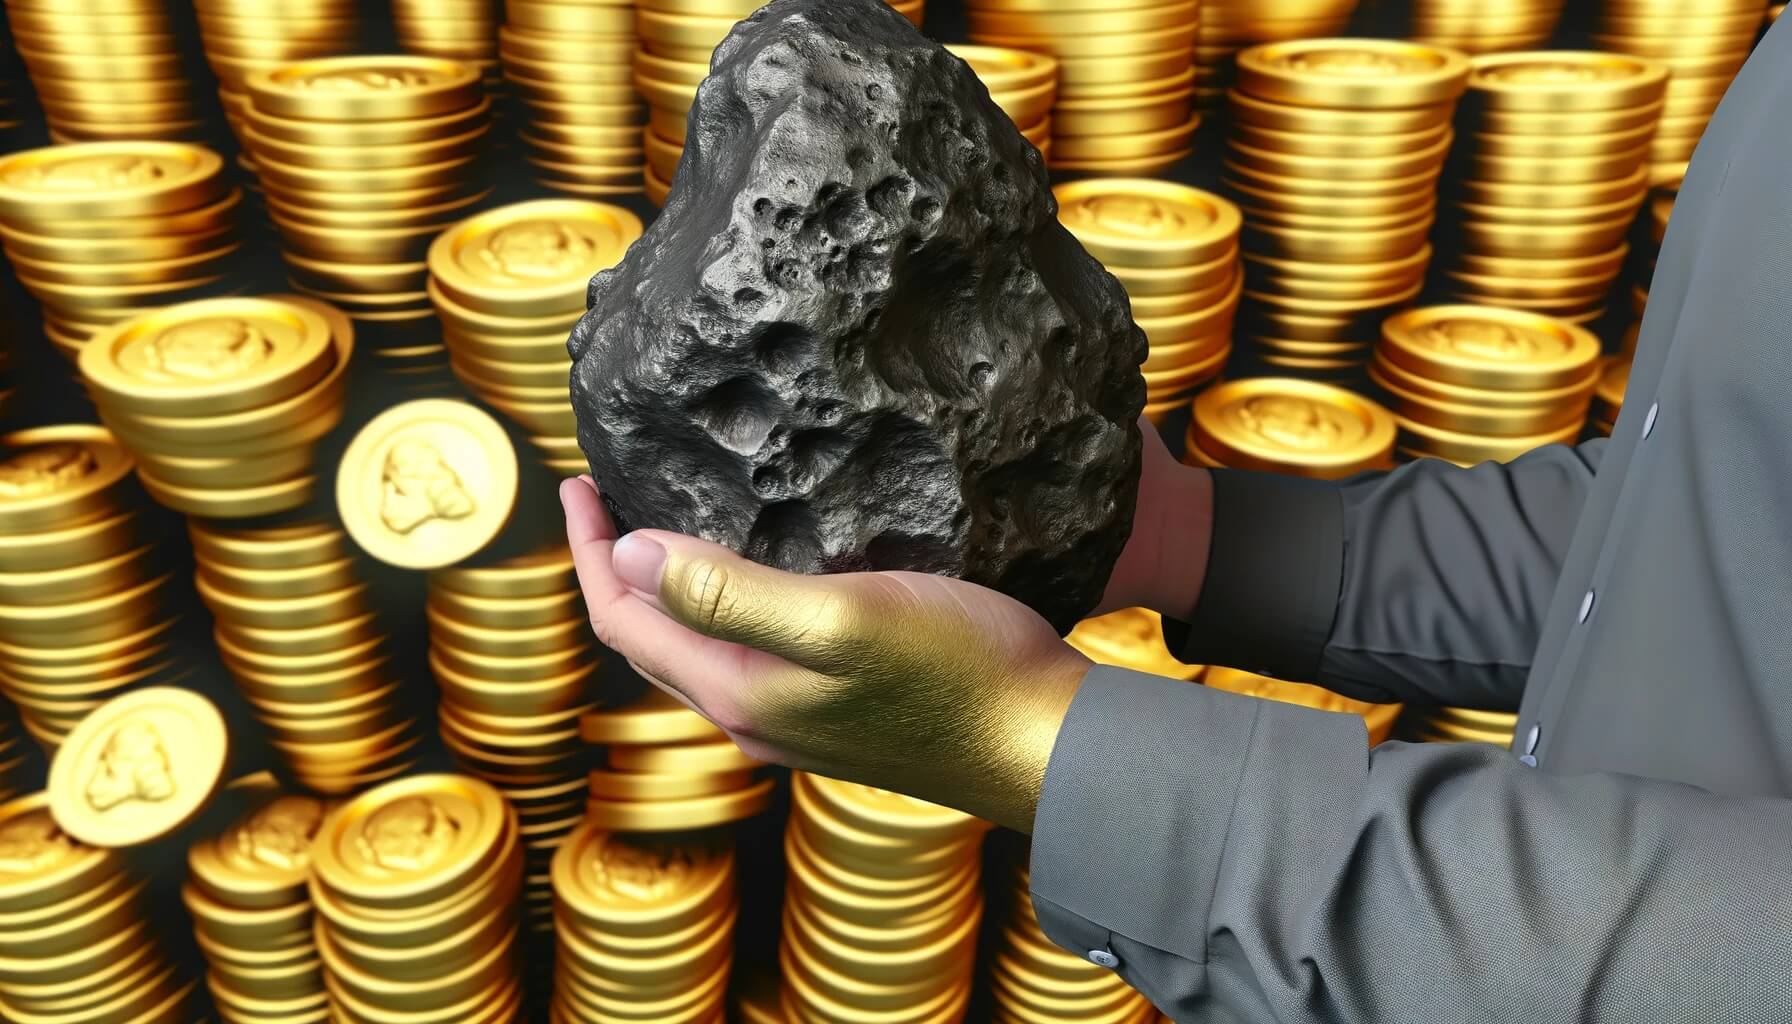 Как продавцы метеоритов становятся миллионерами — реальная история. Поиск метеоритов может сделать человека миллионером, но это слишком опасная работа. Фото.